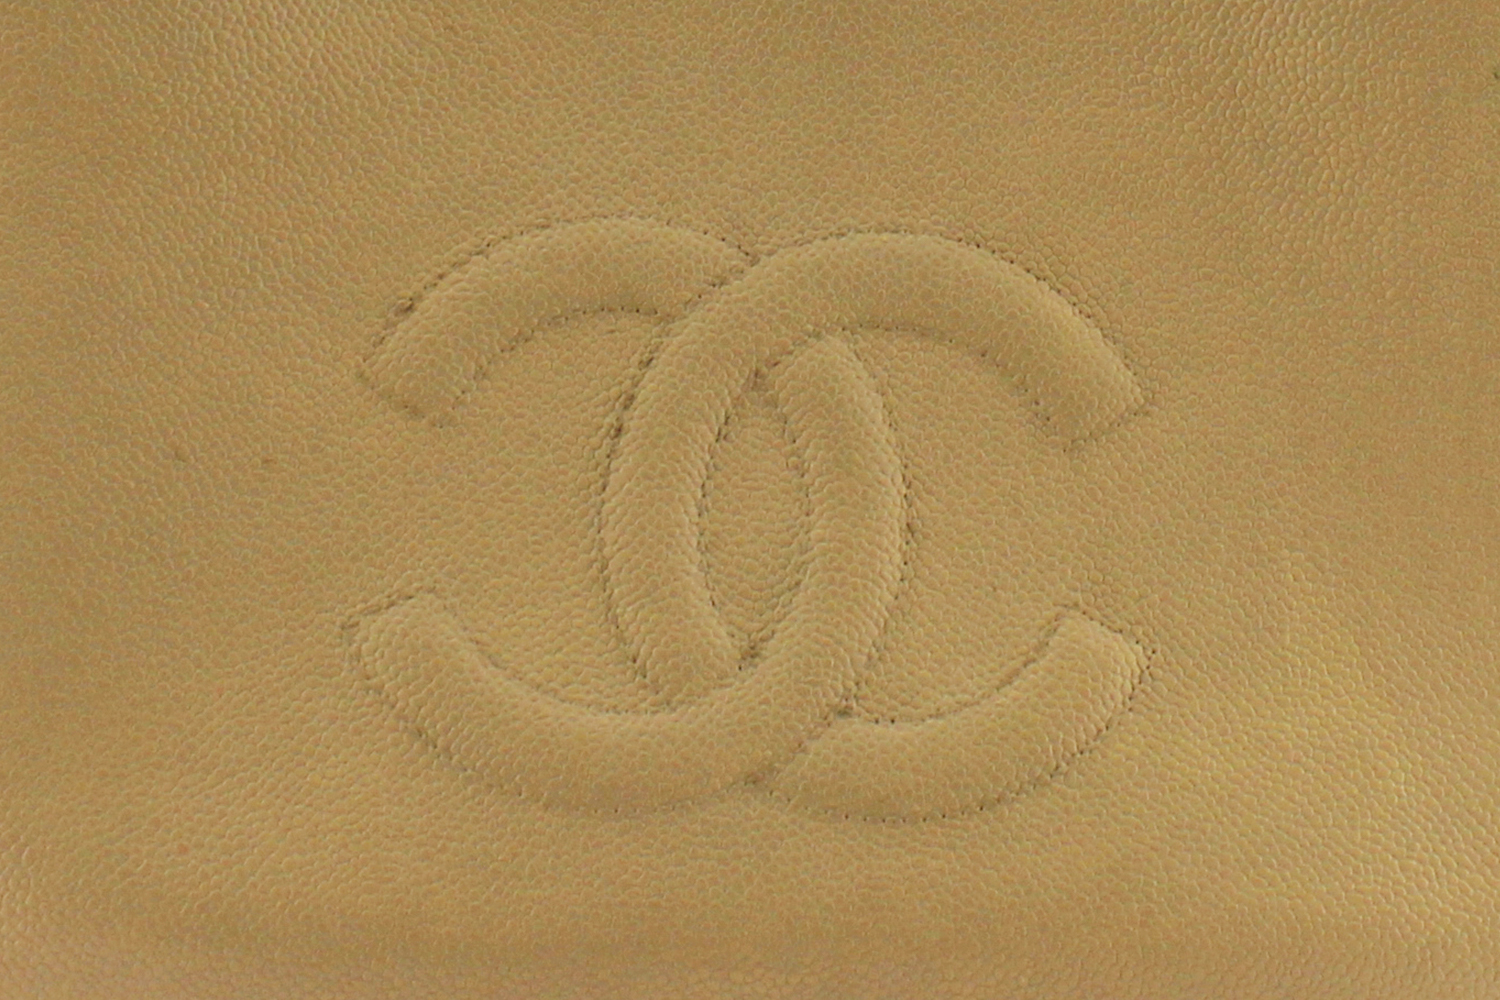 Sac à main Chanel Grand Shopping Authentique d'occasion en cuir grainé couleur beige